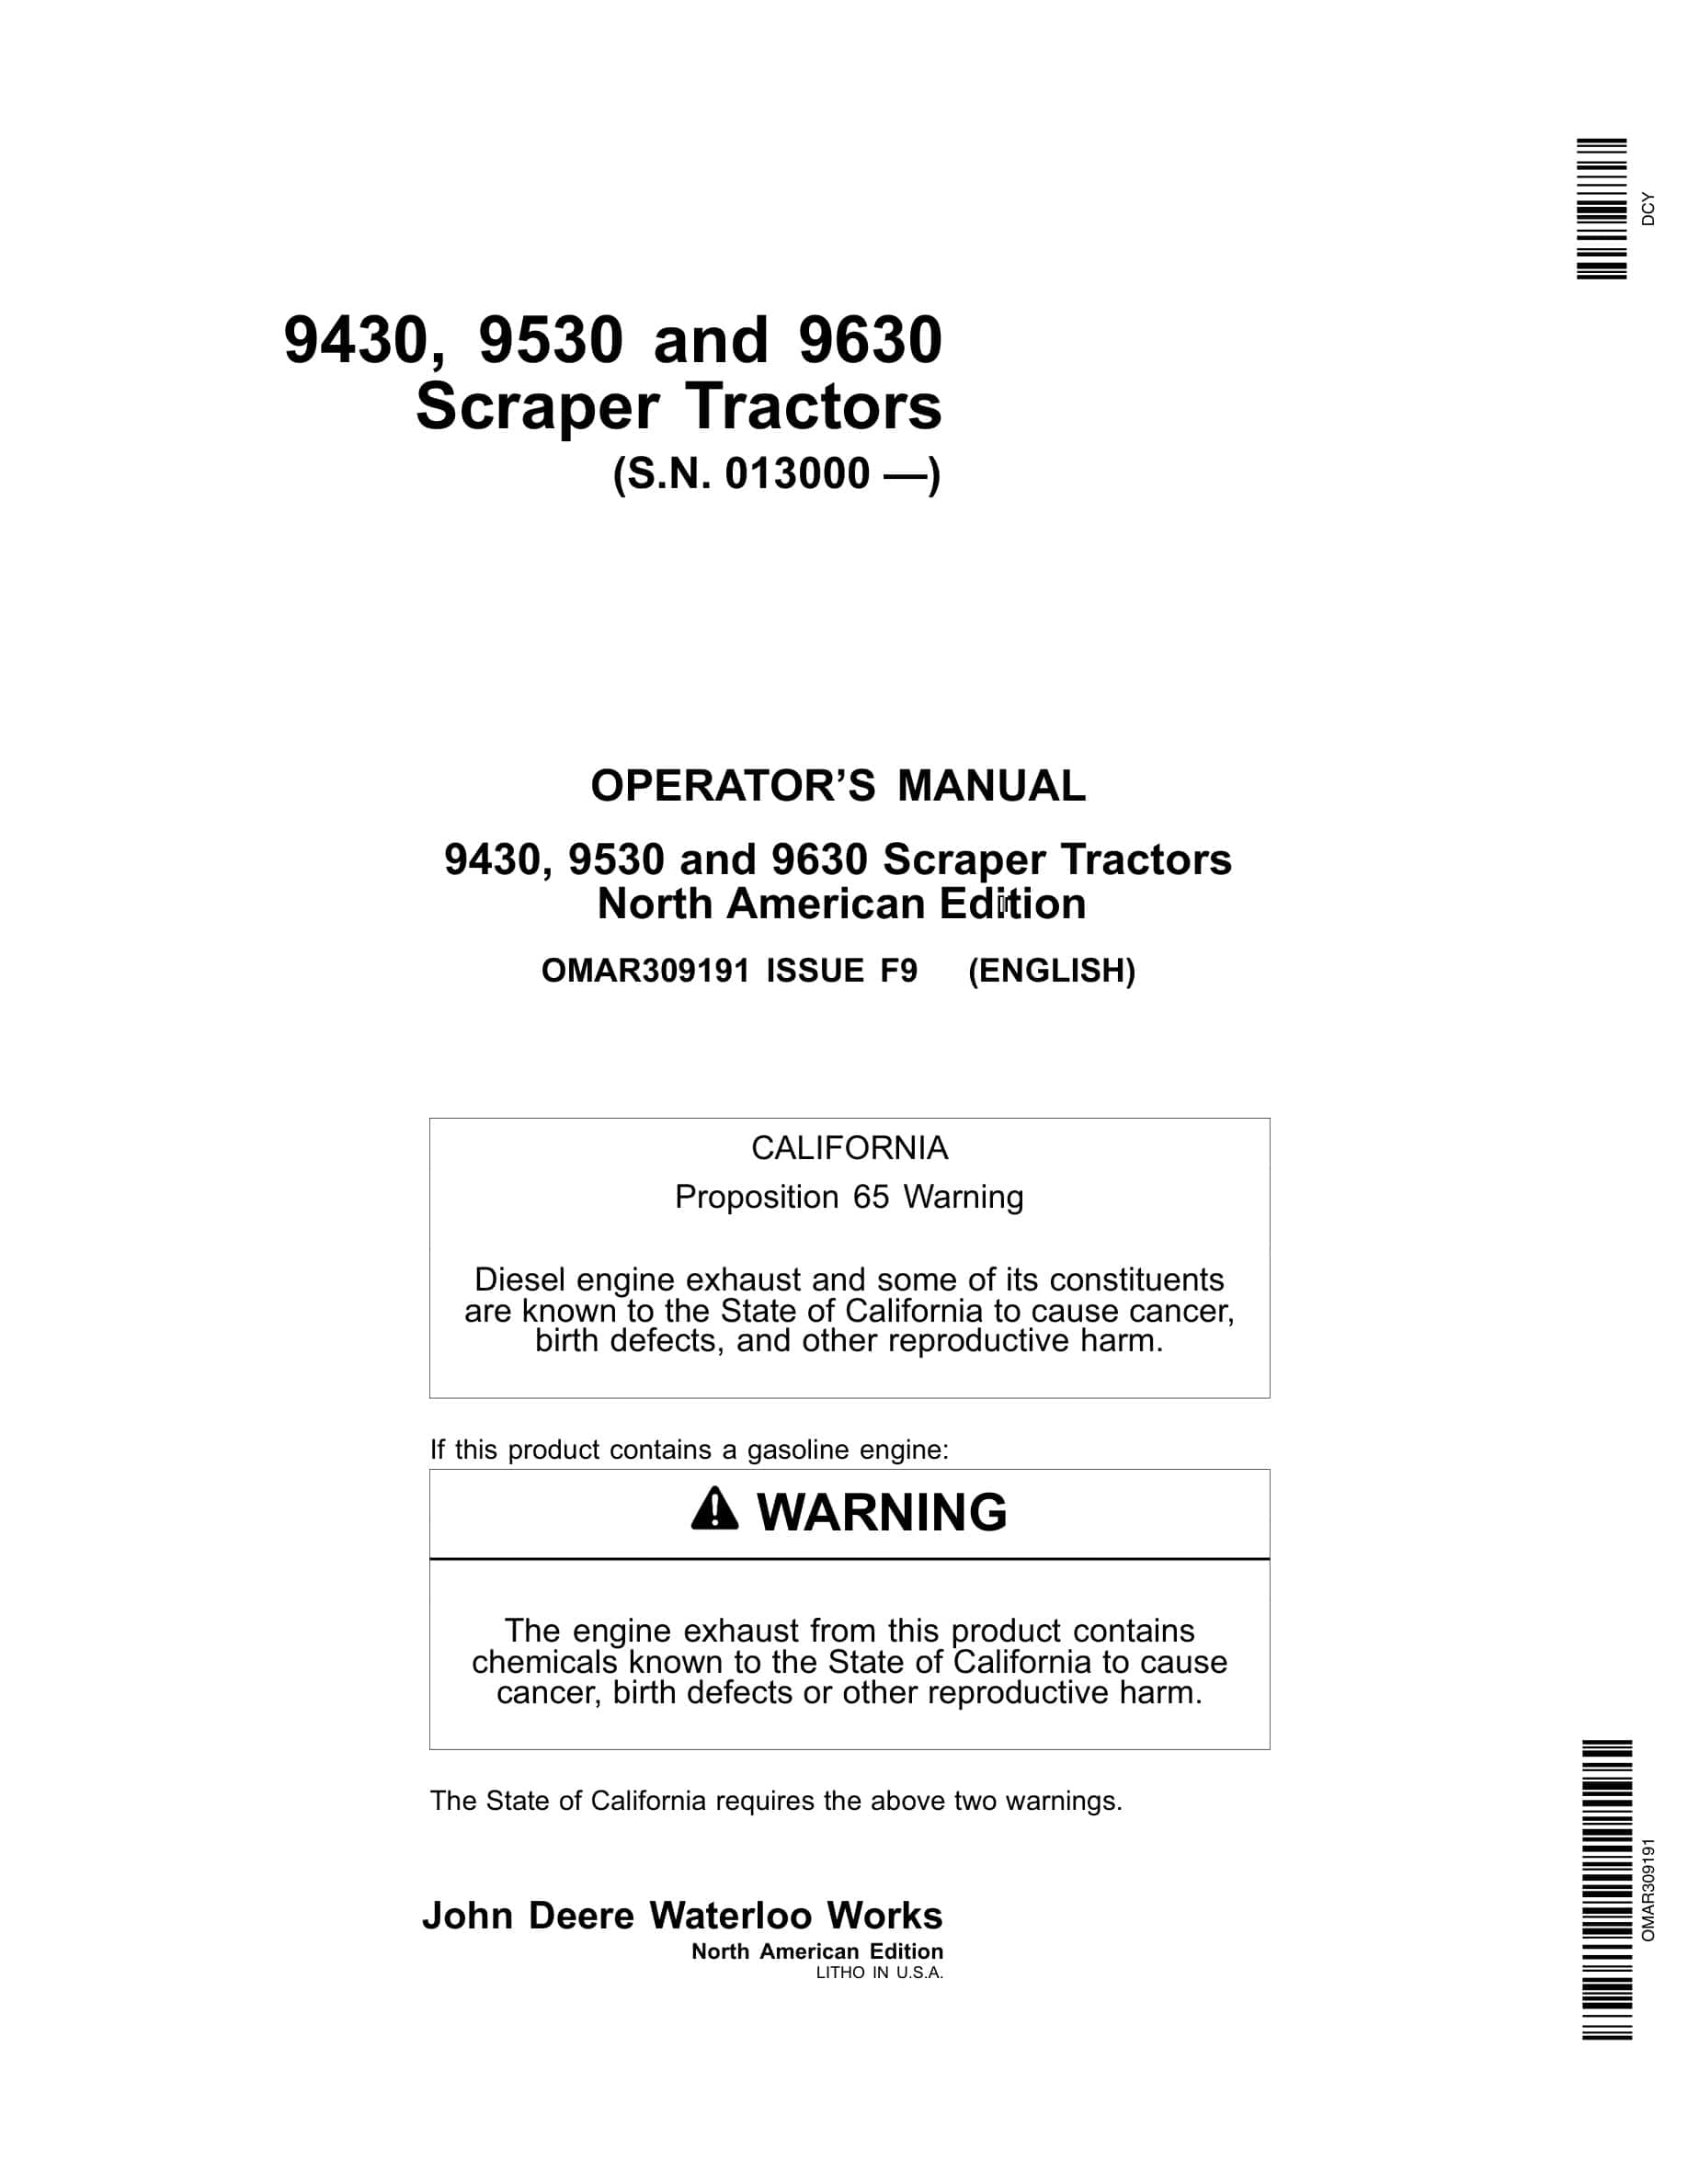 John Deere 9430 9530 9630 Tractor Operator Manual OMAR309191-1